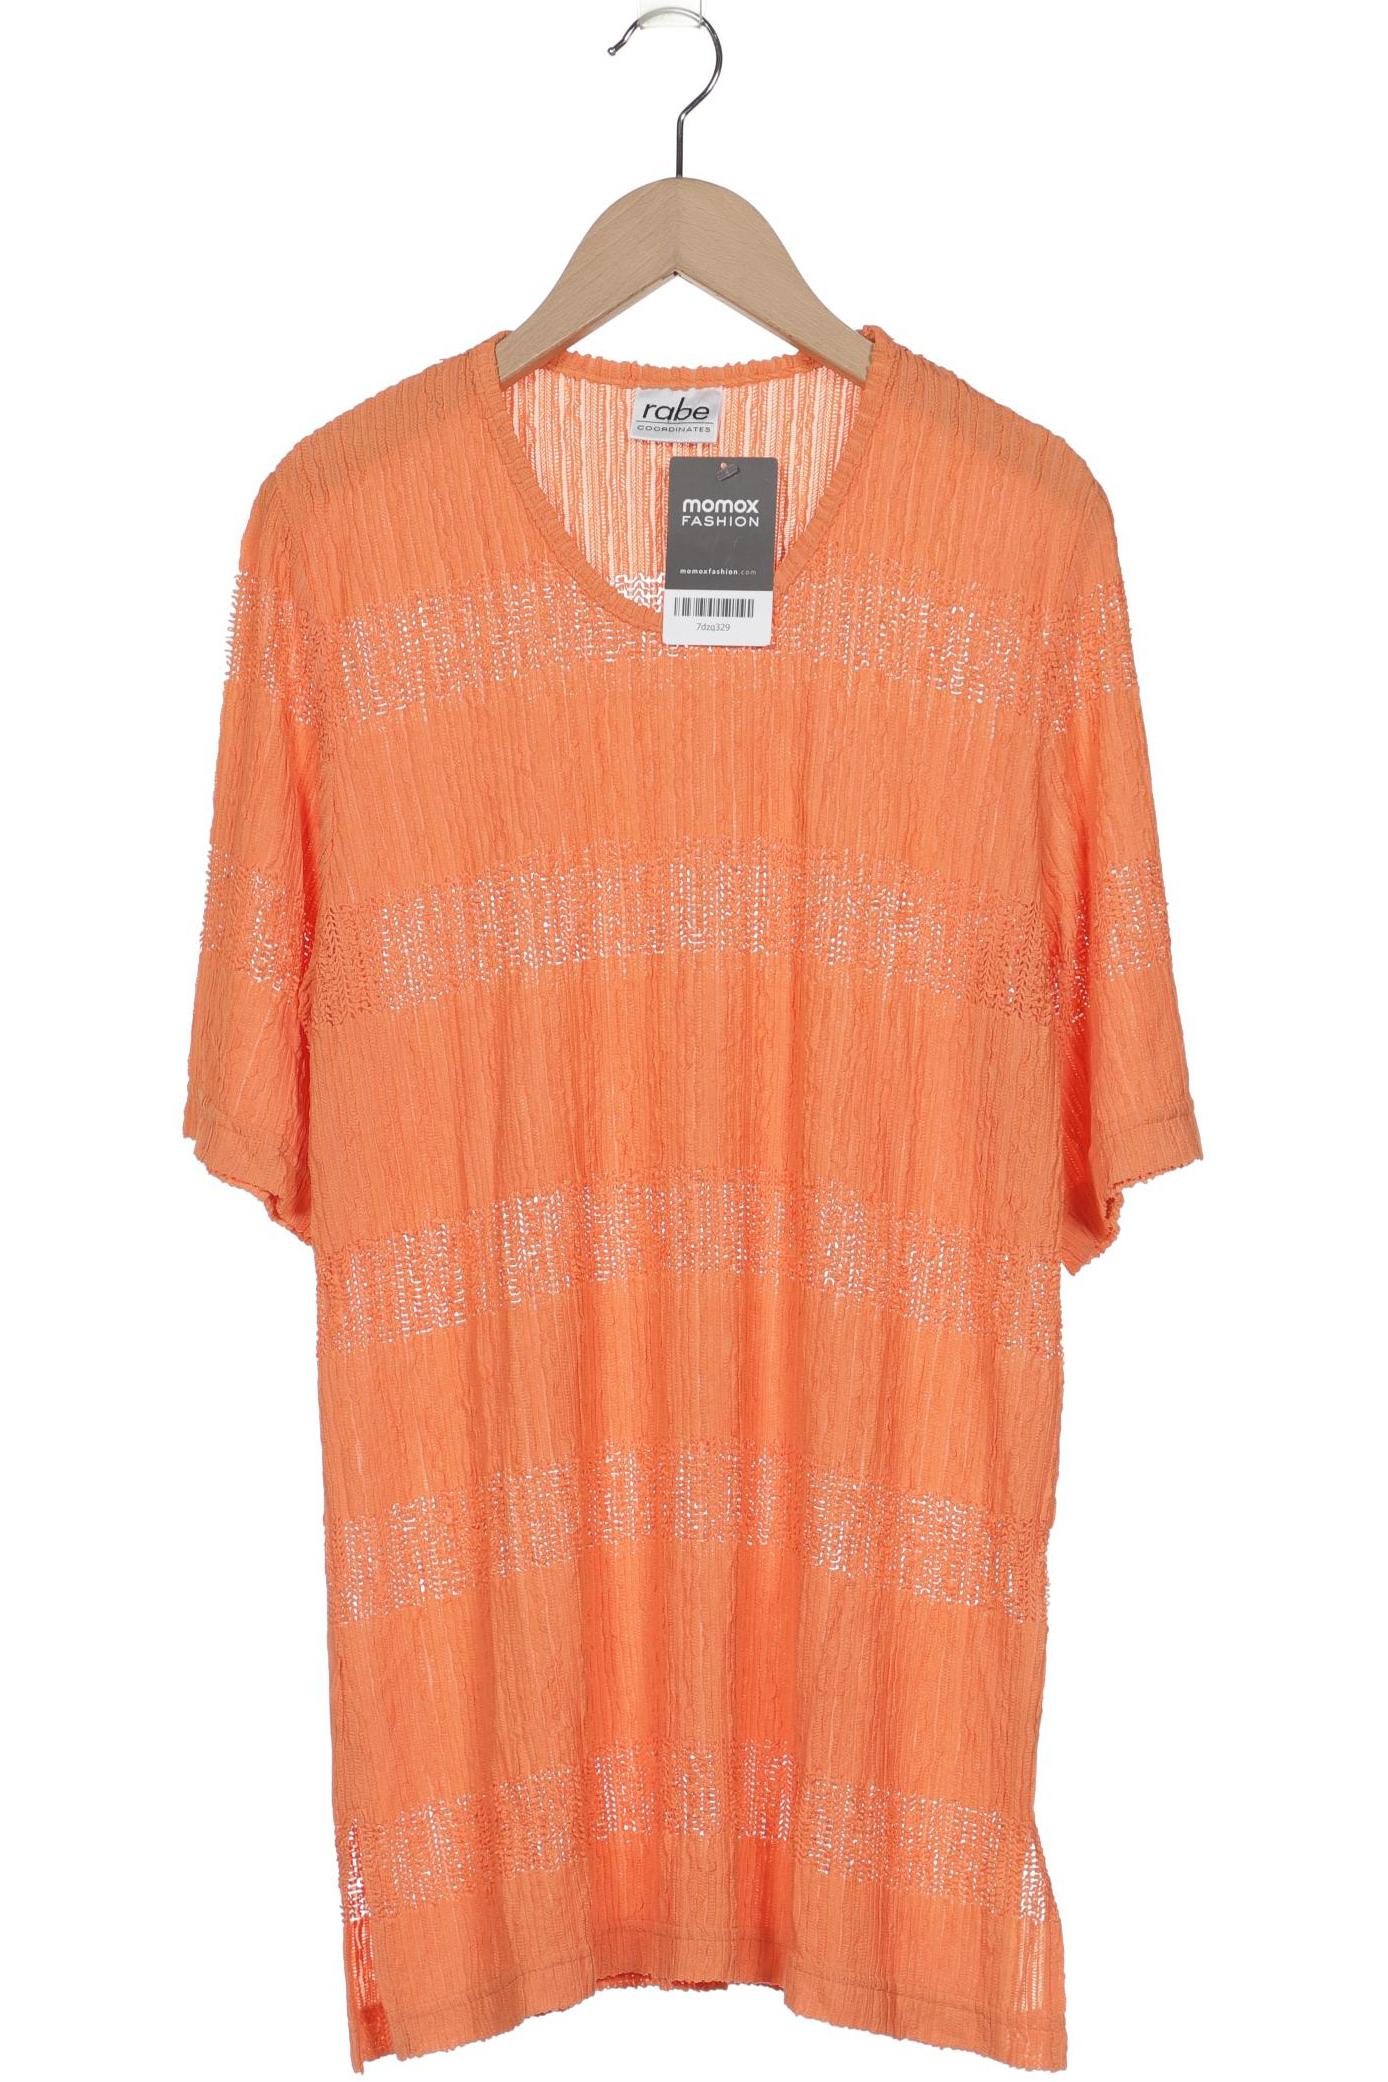 Rabe Damen T-Shirt, orange, Gr. 38 von RABE